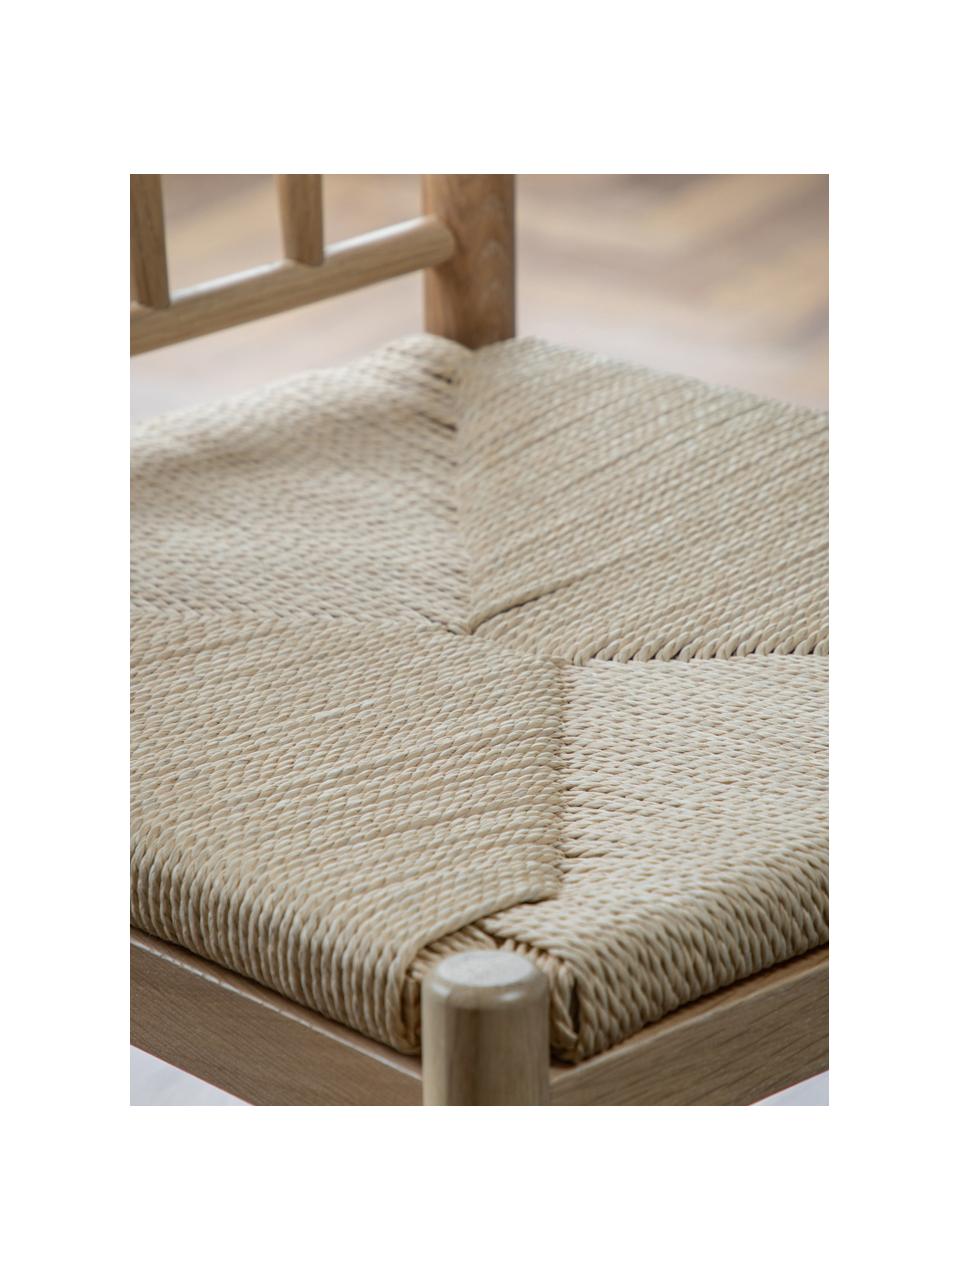 Chaises de comptoir en bois de hêtre fabriquées à la main Eton, 2 pièces, Bois clair, beige clair, larg. 46 x haut. 111 cm